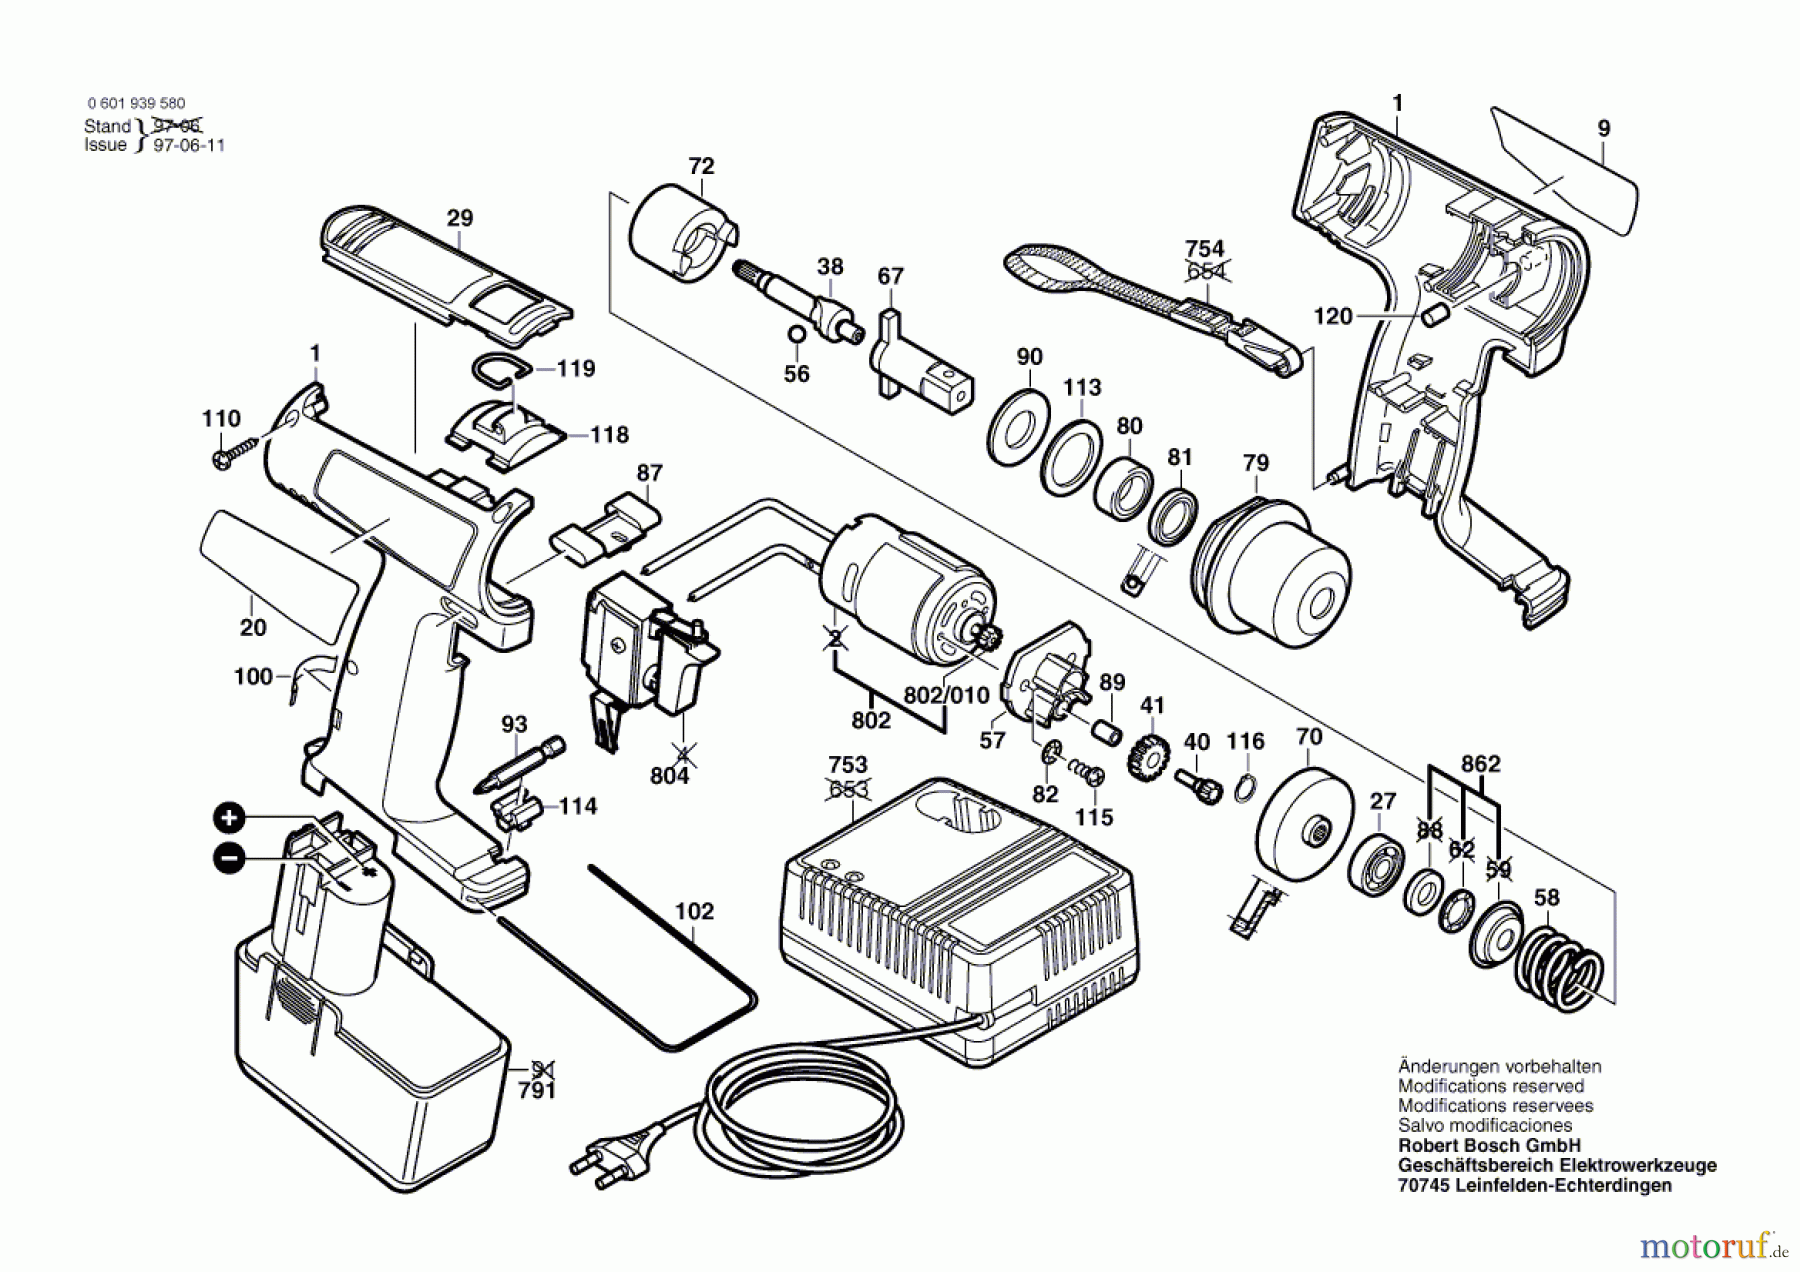  Bosch Akku Werkzeug Akku-Drehschlagschrauber GDR 100 Seite 1